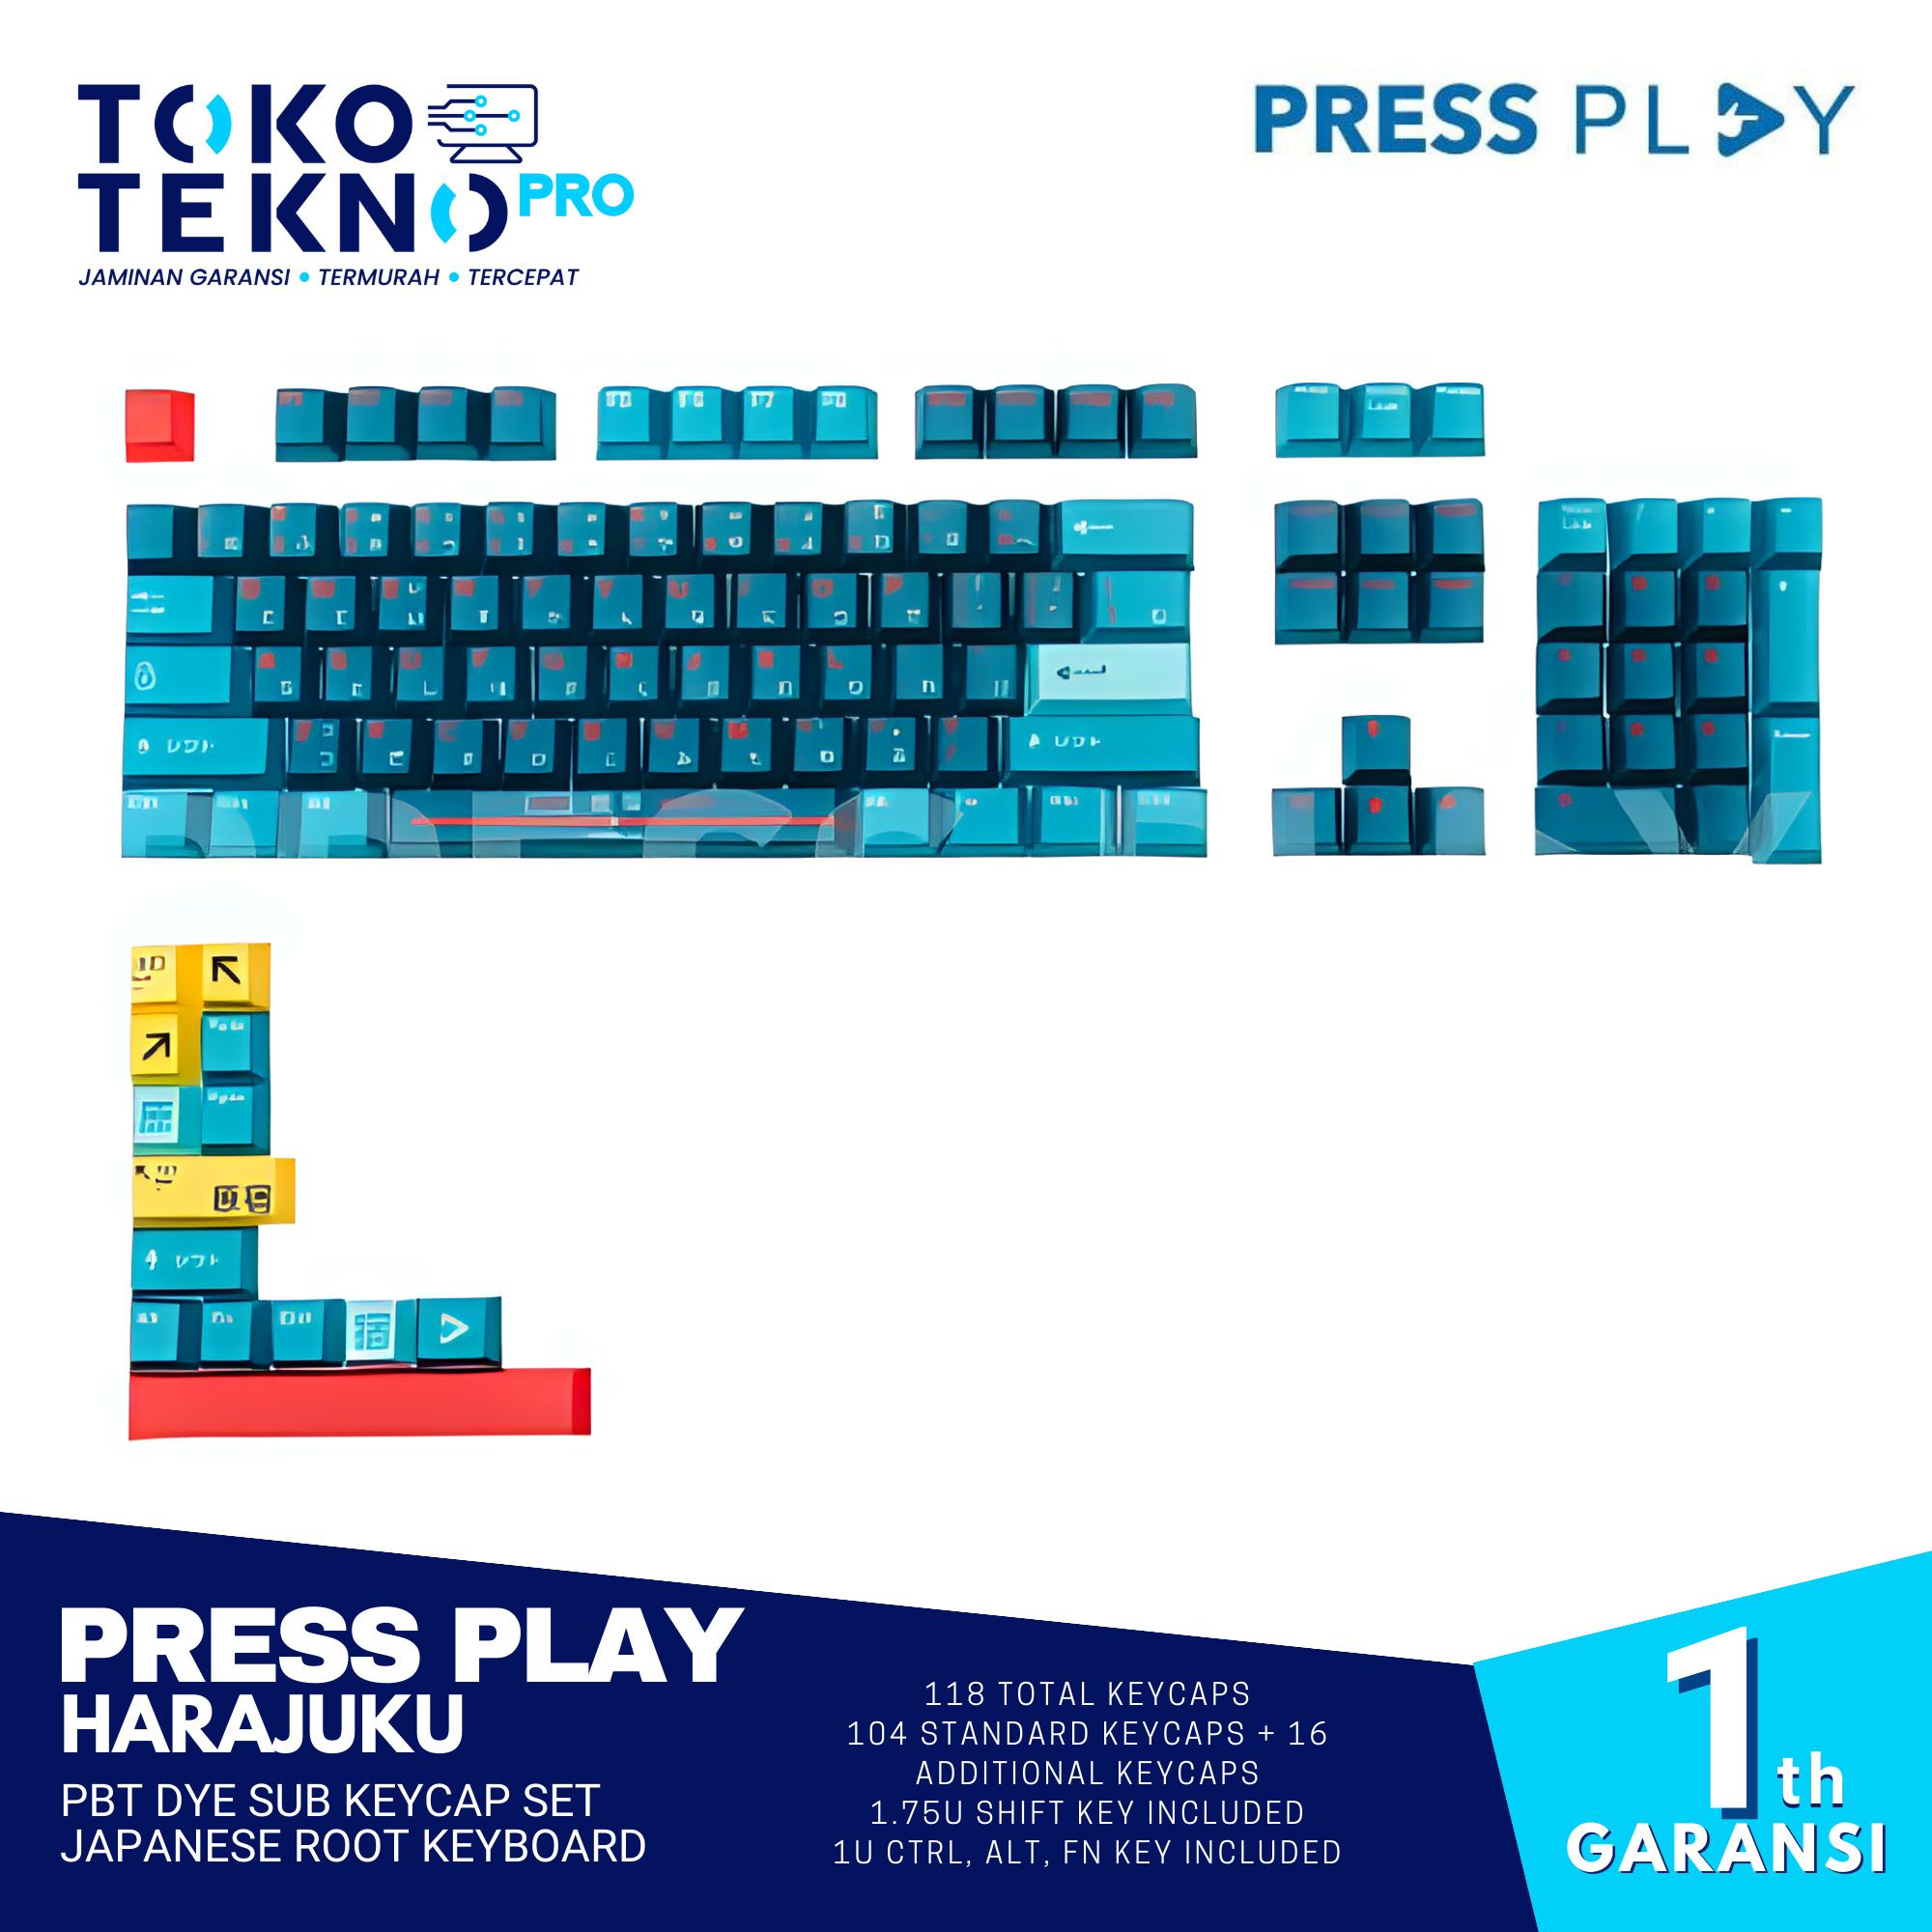 Press Play Harajuku PBT Dye Sub Keycap Set Japanese Root